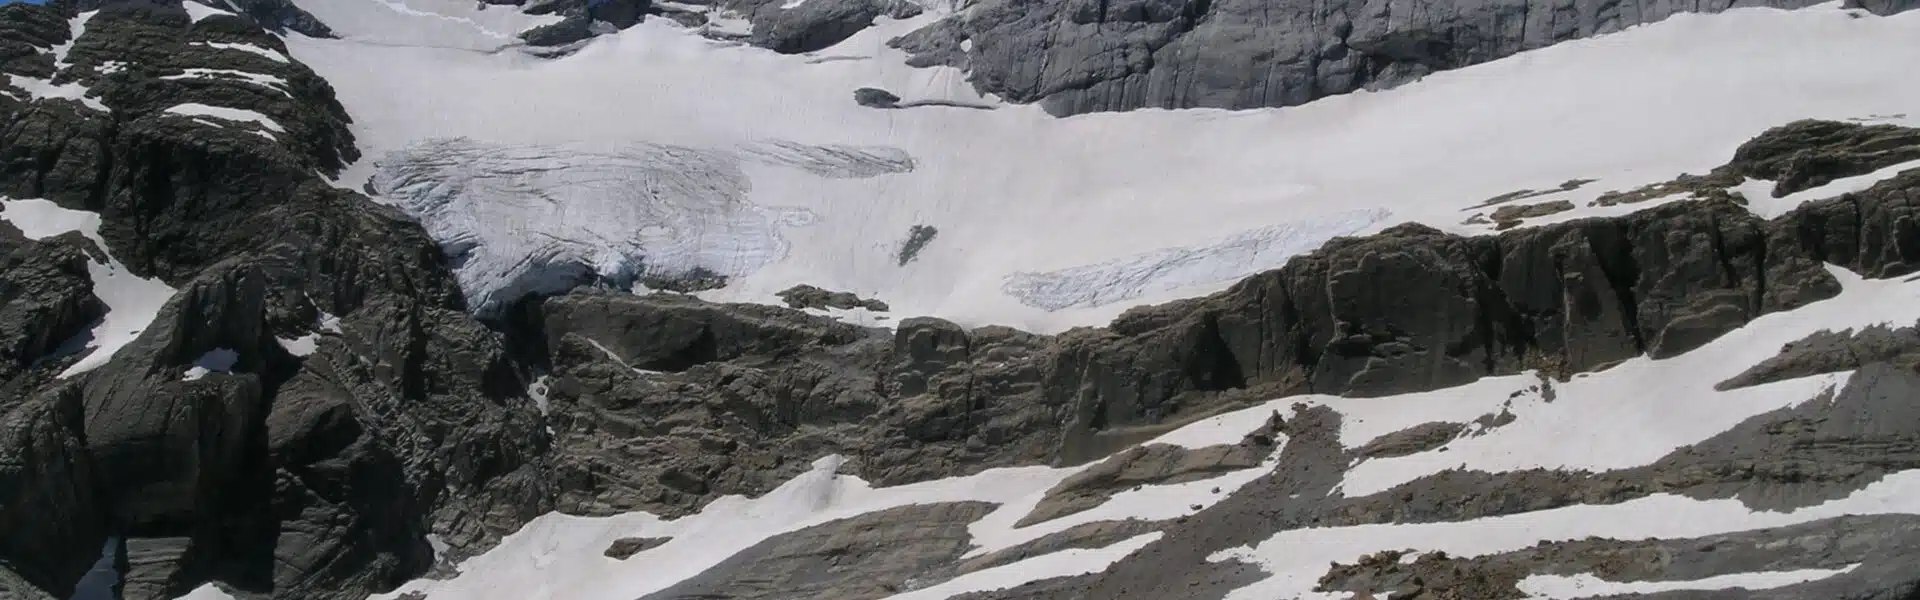 Cara norte del Monte Perdido y su glaciar